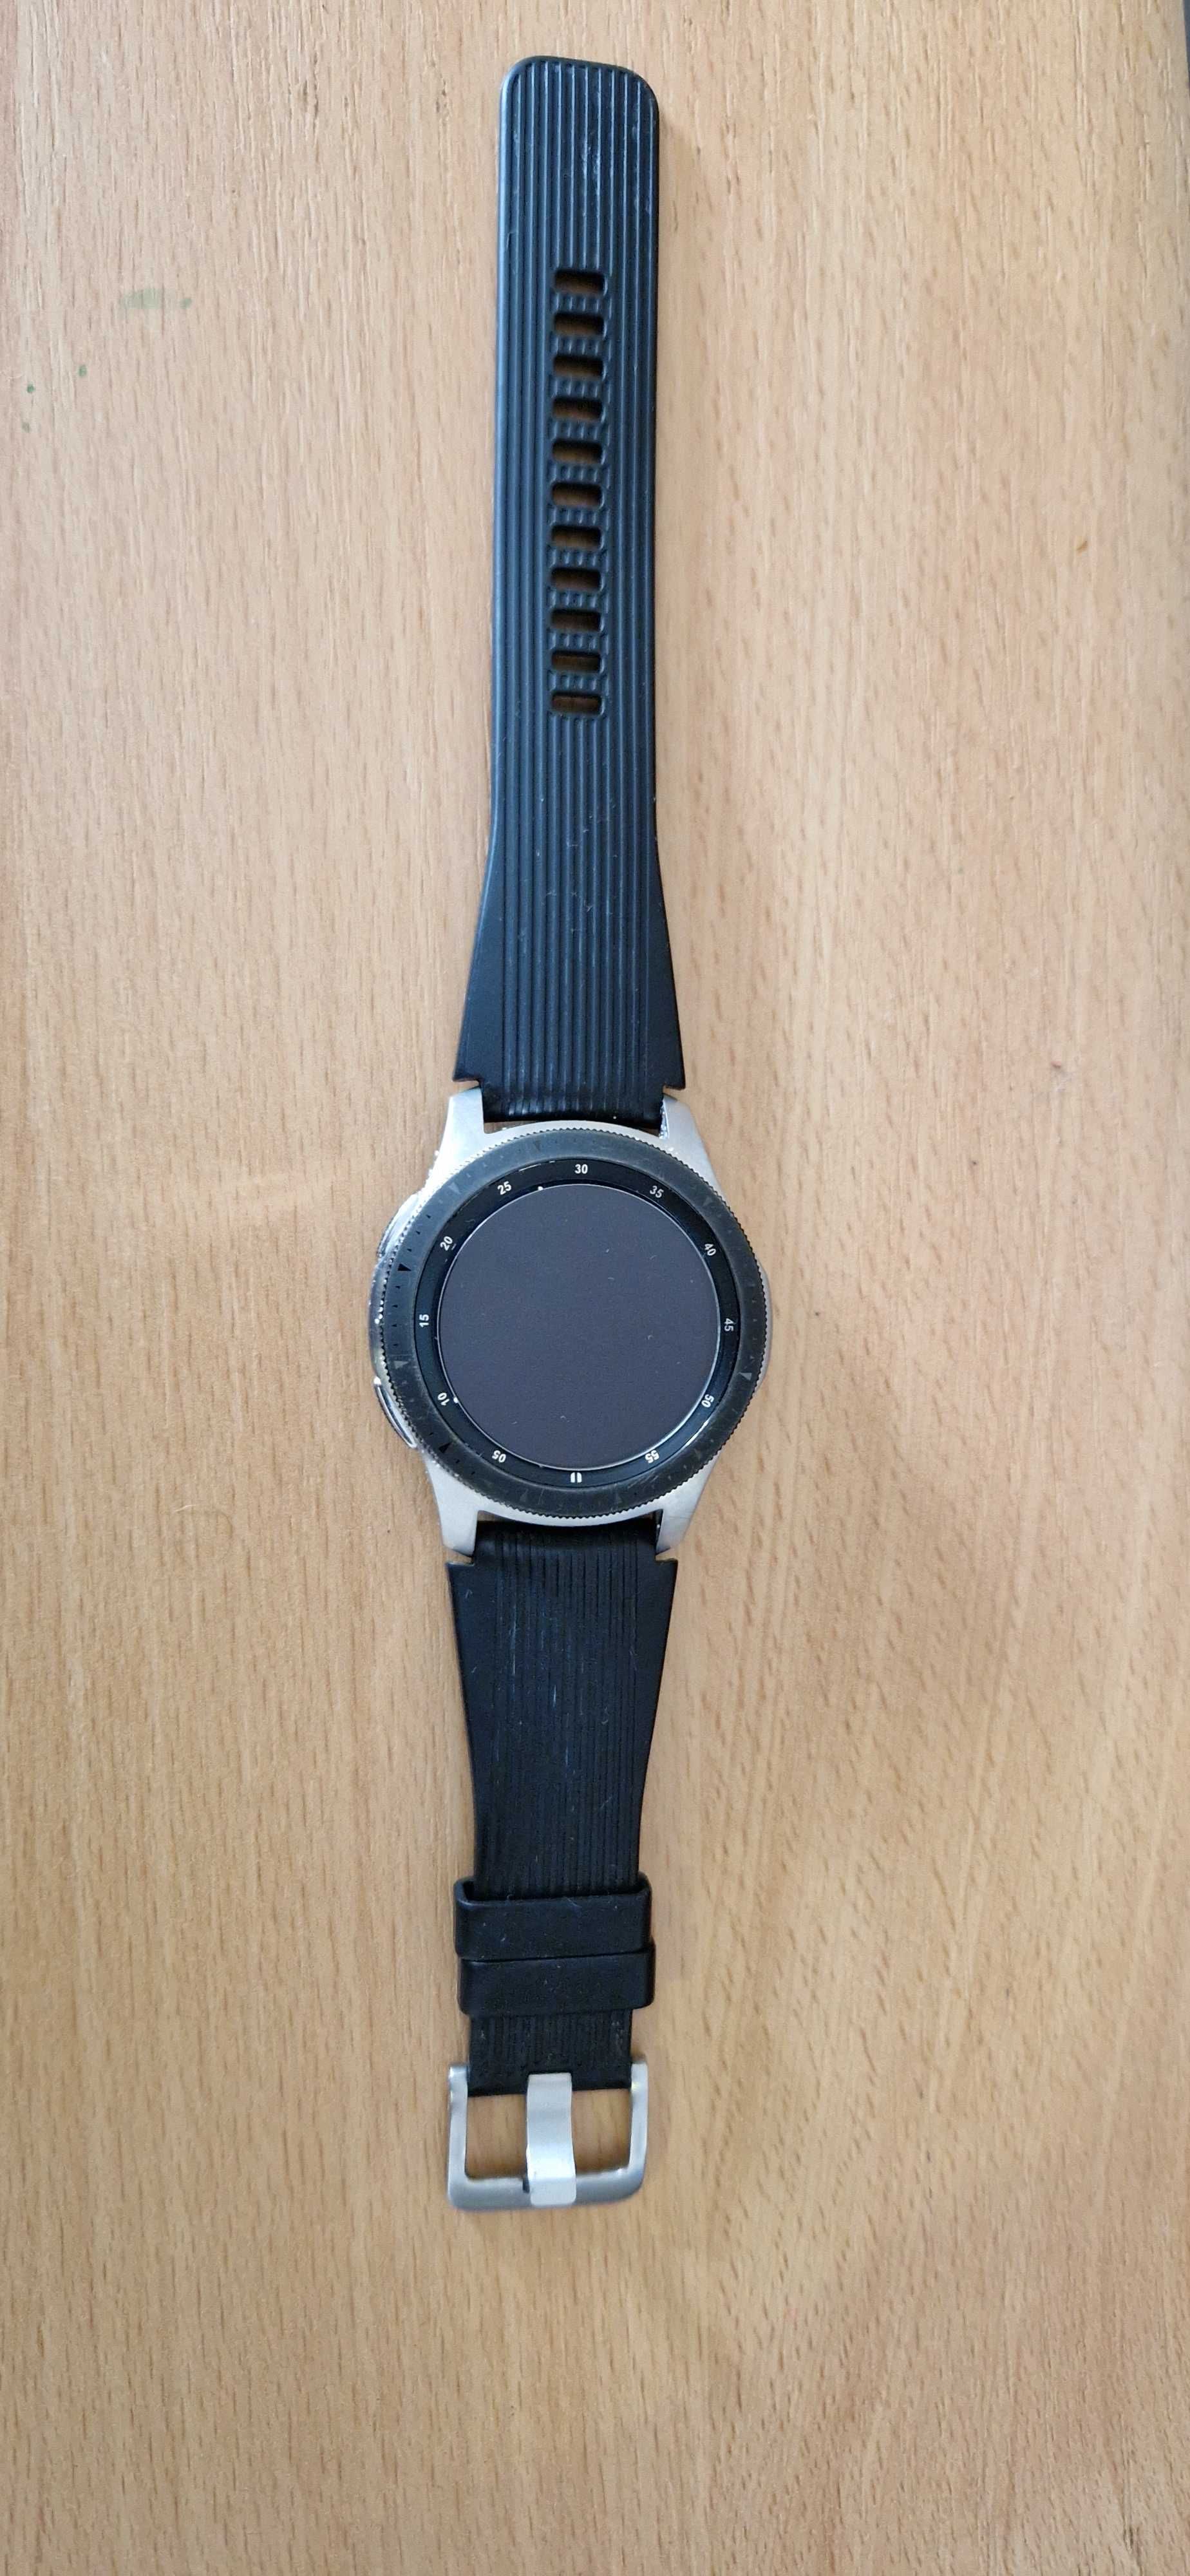 Samsung Galaxy Watch SM-R800, 46mm